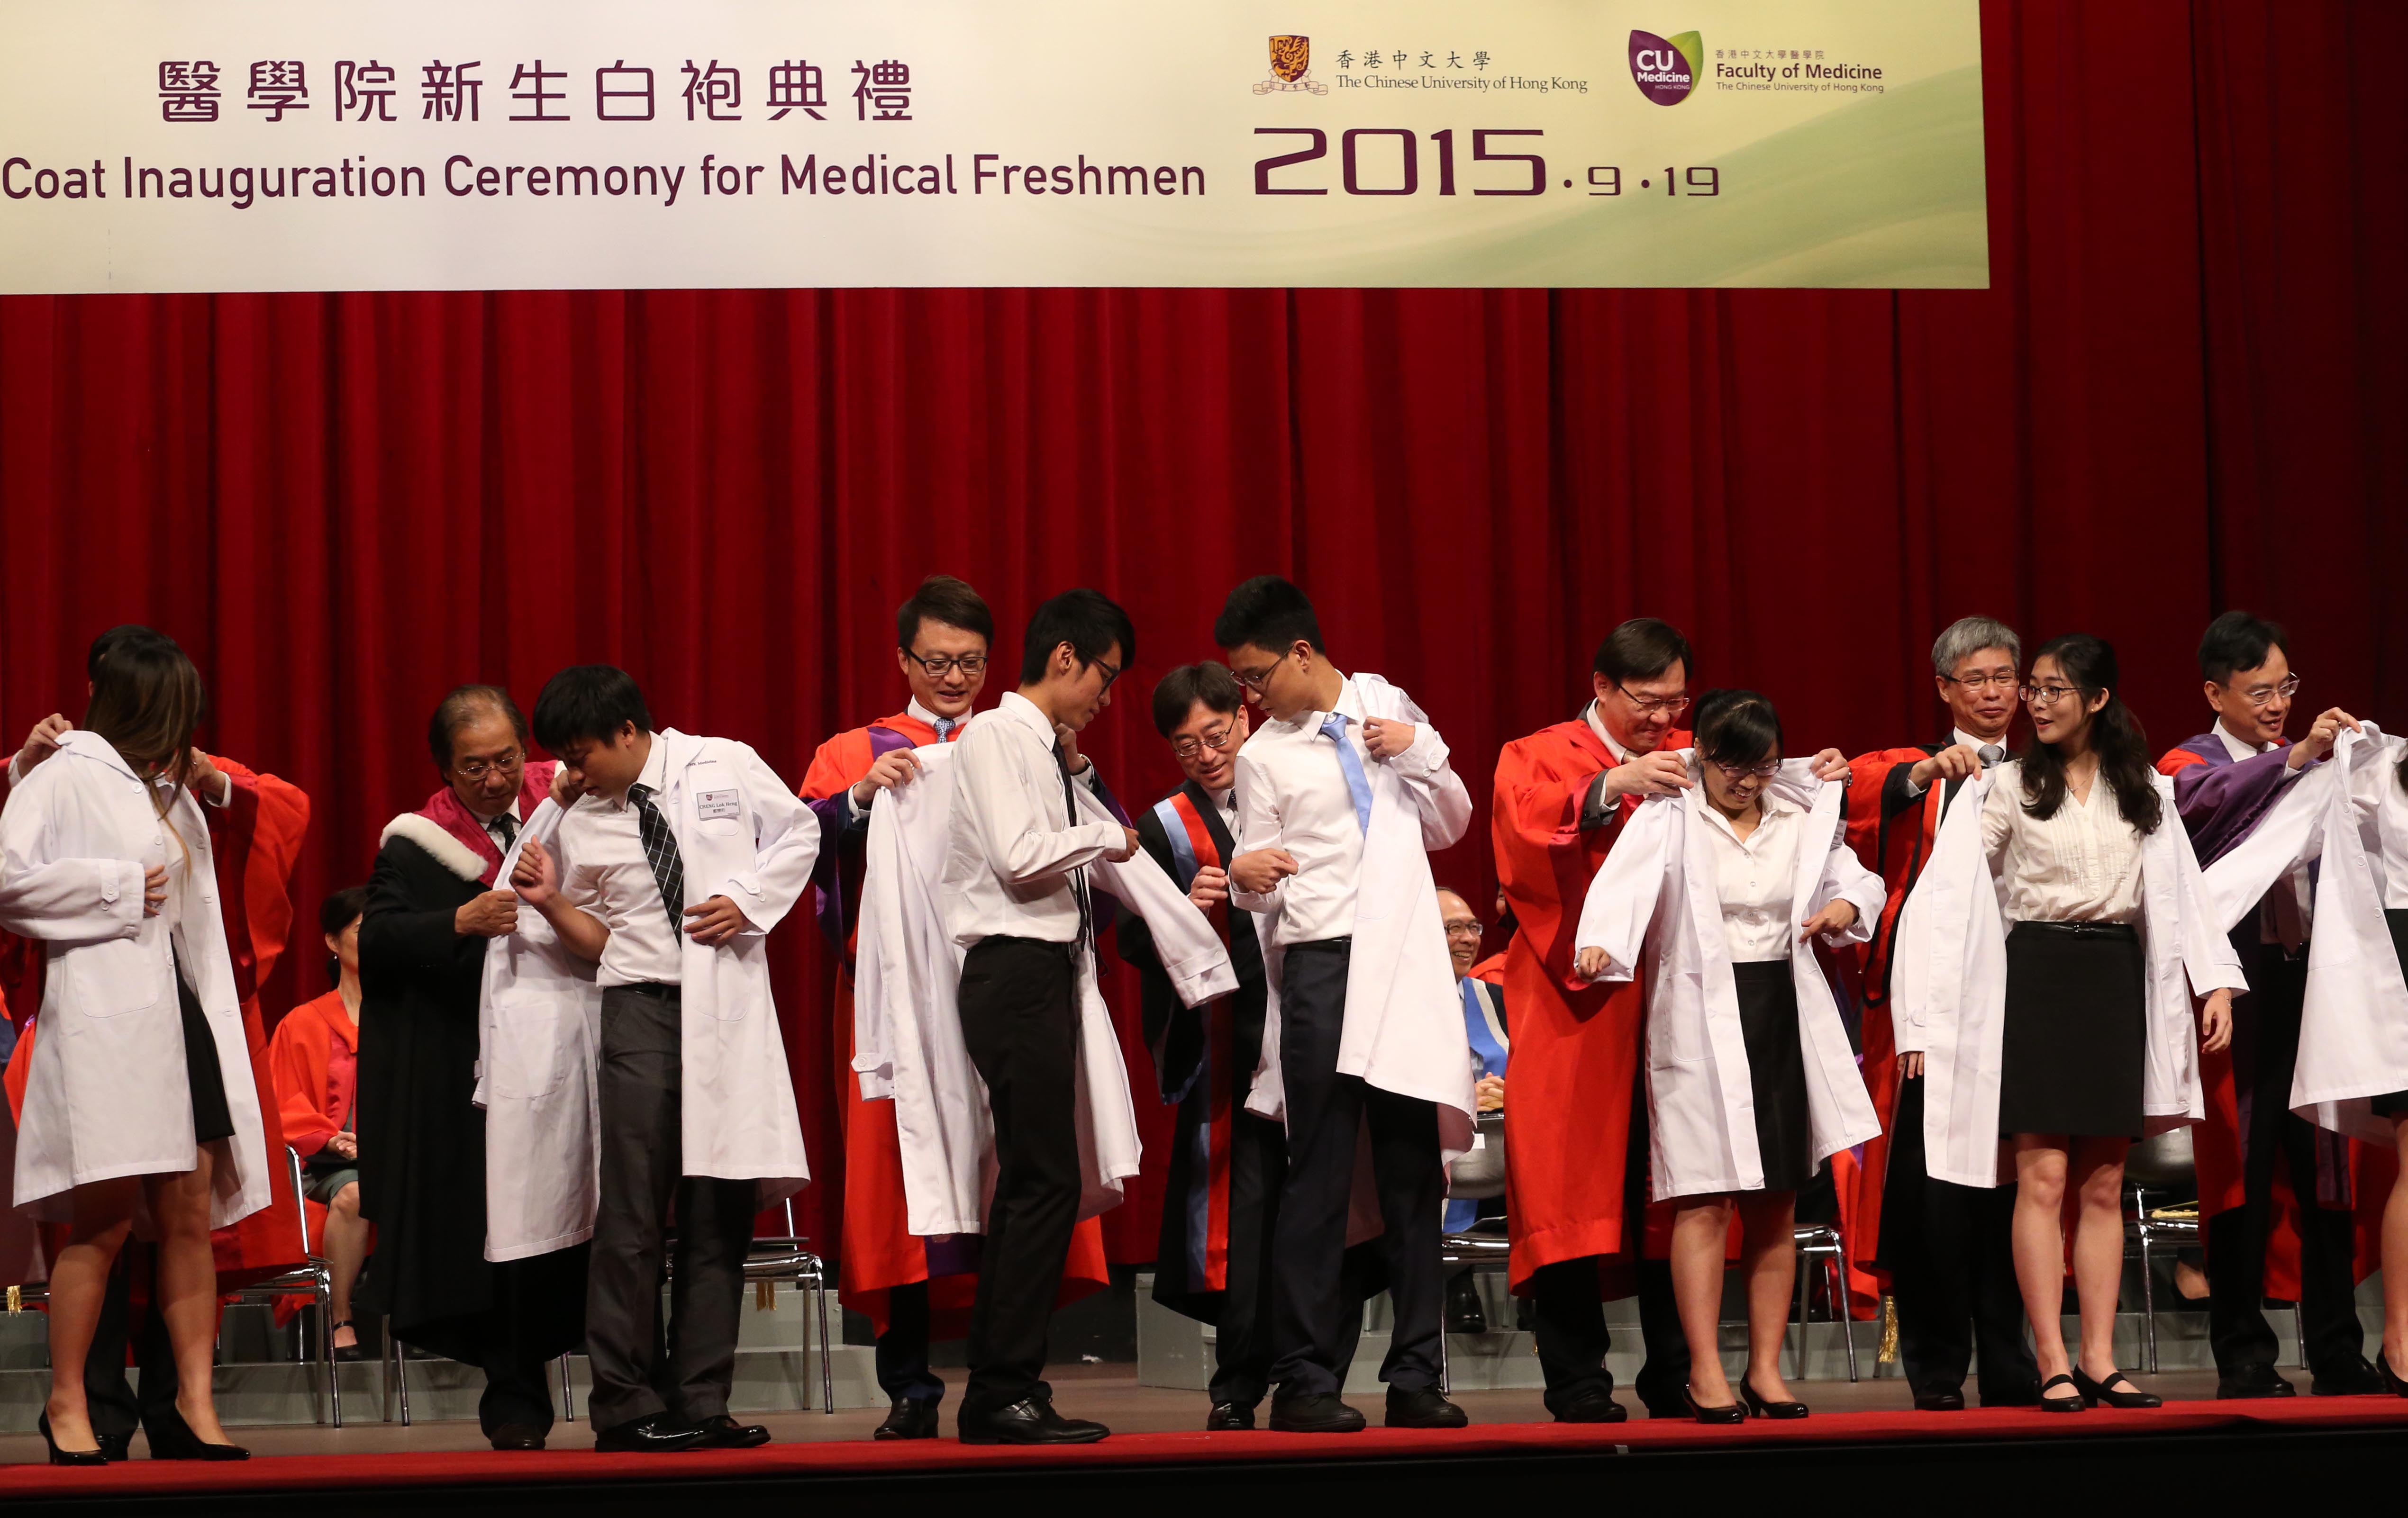 中大醫學院舉行「新生白袍典禮」